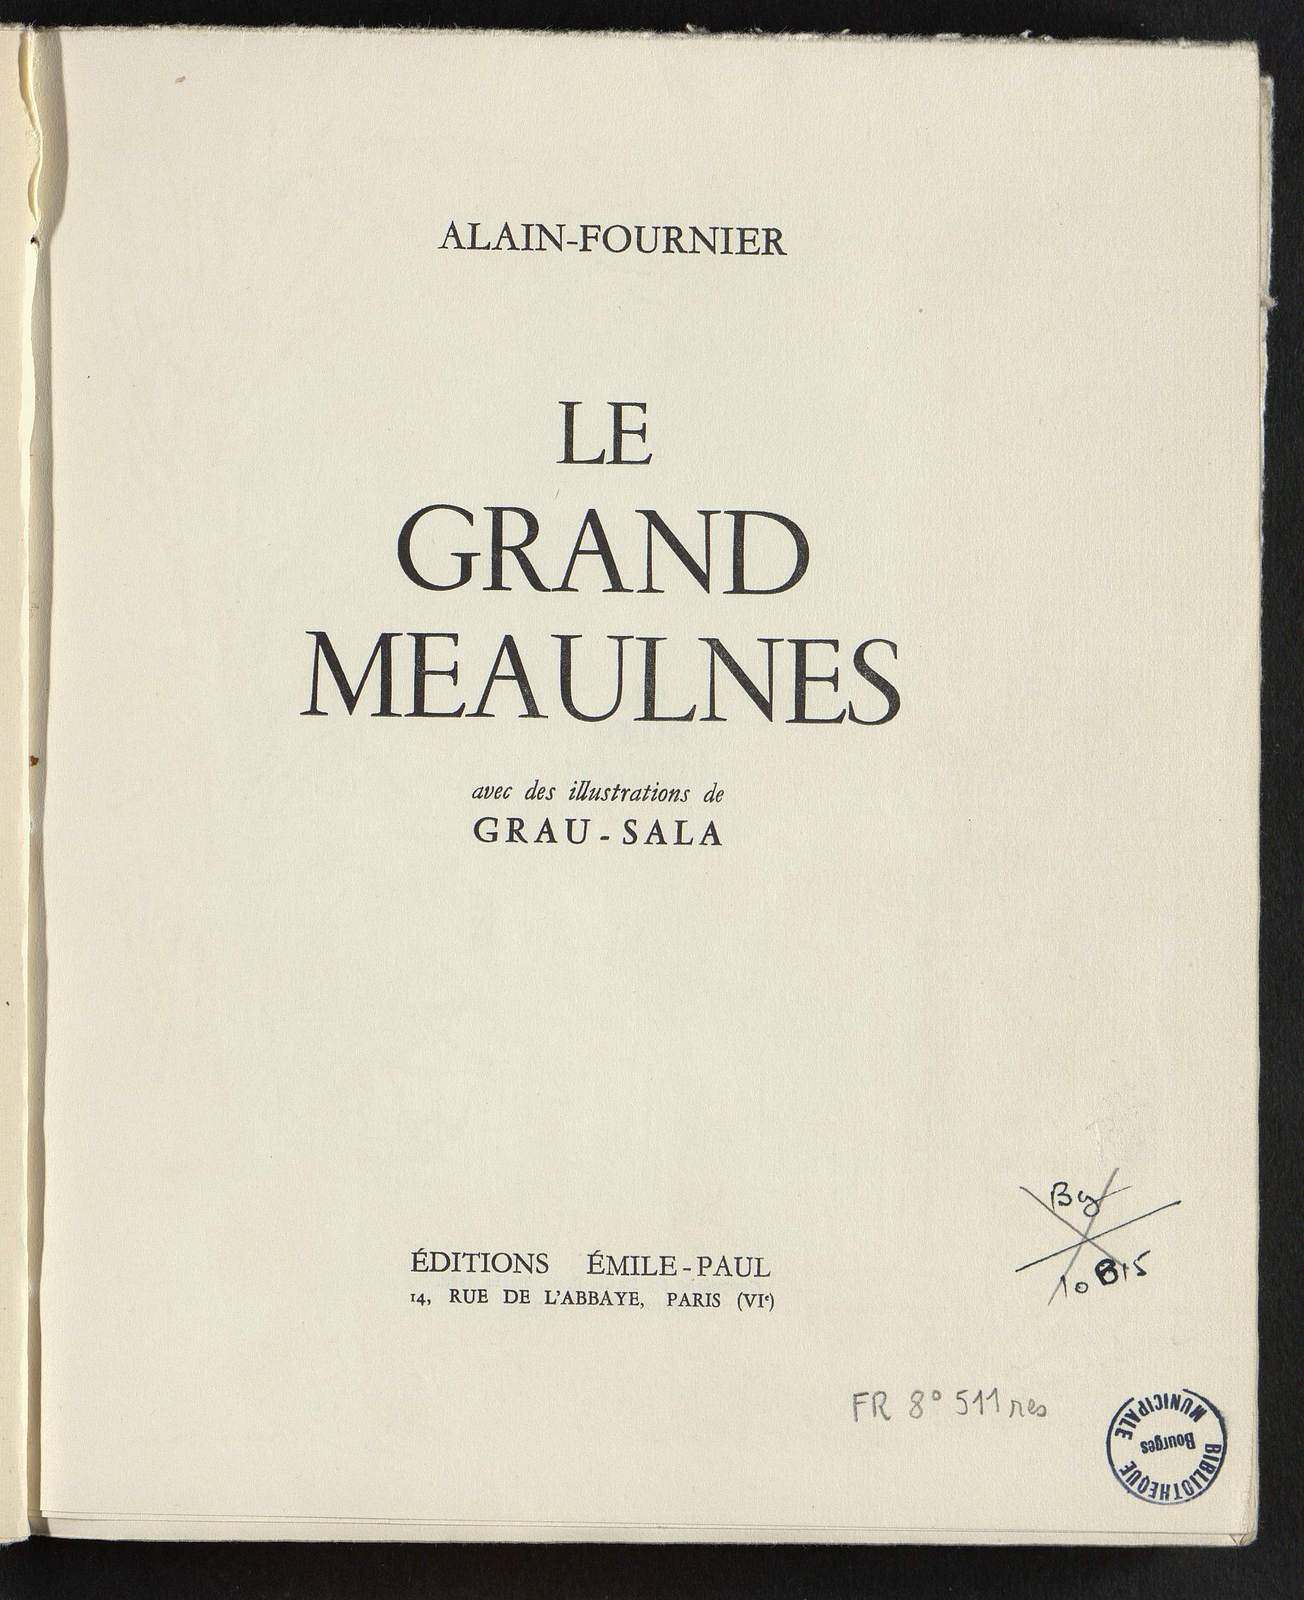 Le Grand Meaulnes, Nous tombons dans une embuscade, illustré par Grau-Sala, Emile-Paul Frères, 1955